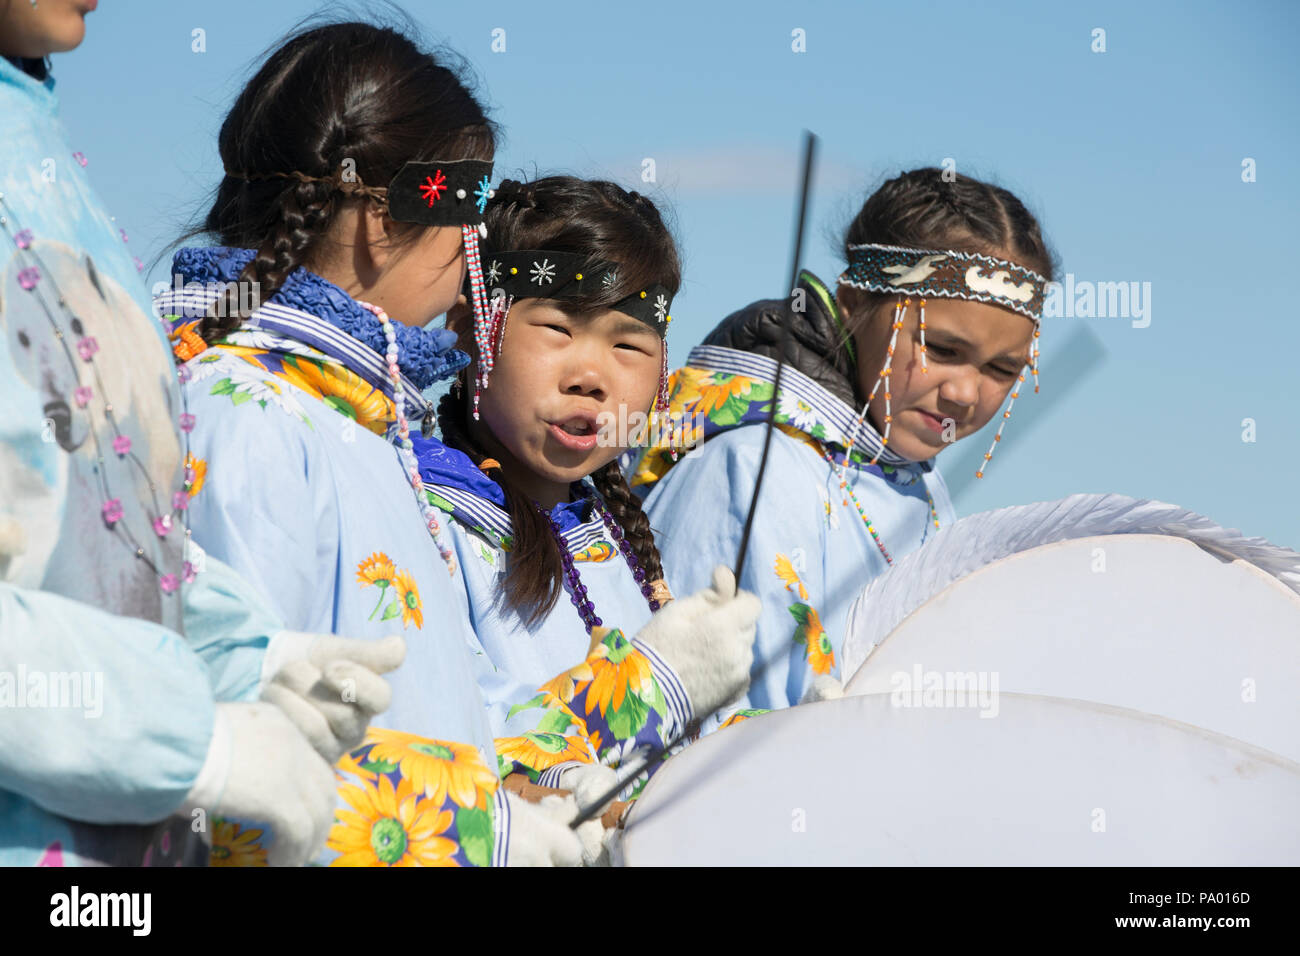 Los niños de Lorino Village en traje tradicional, Chukotka, Rusia Foto de stock